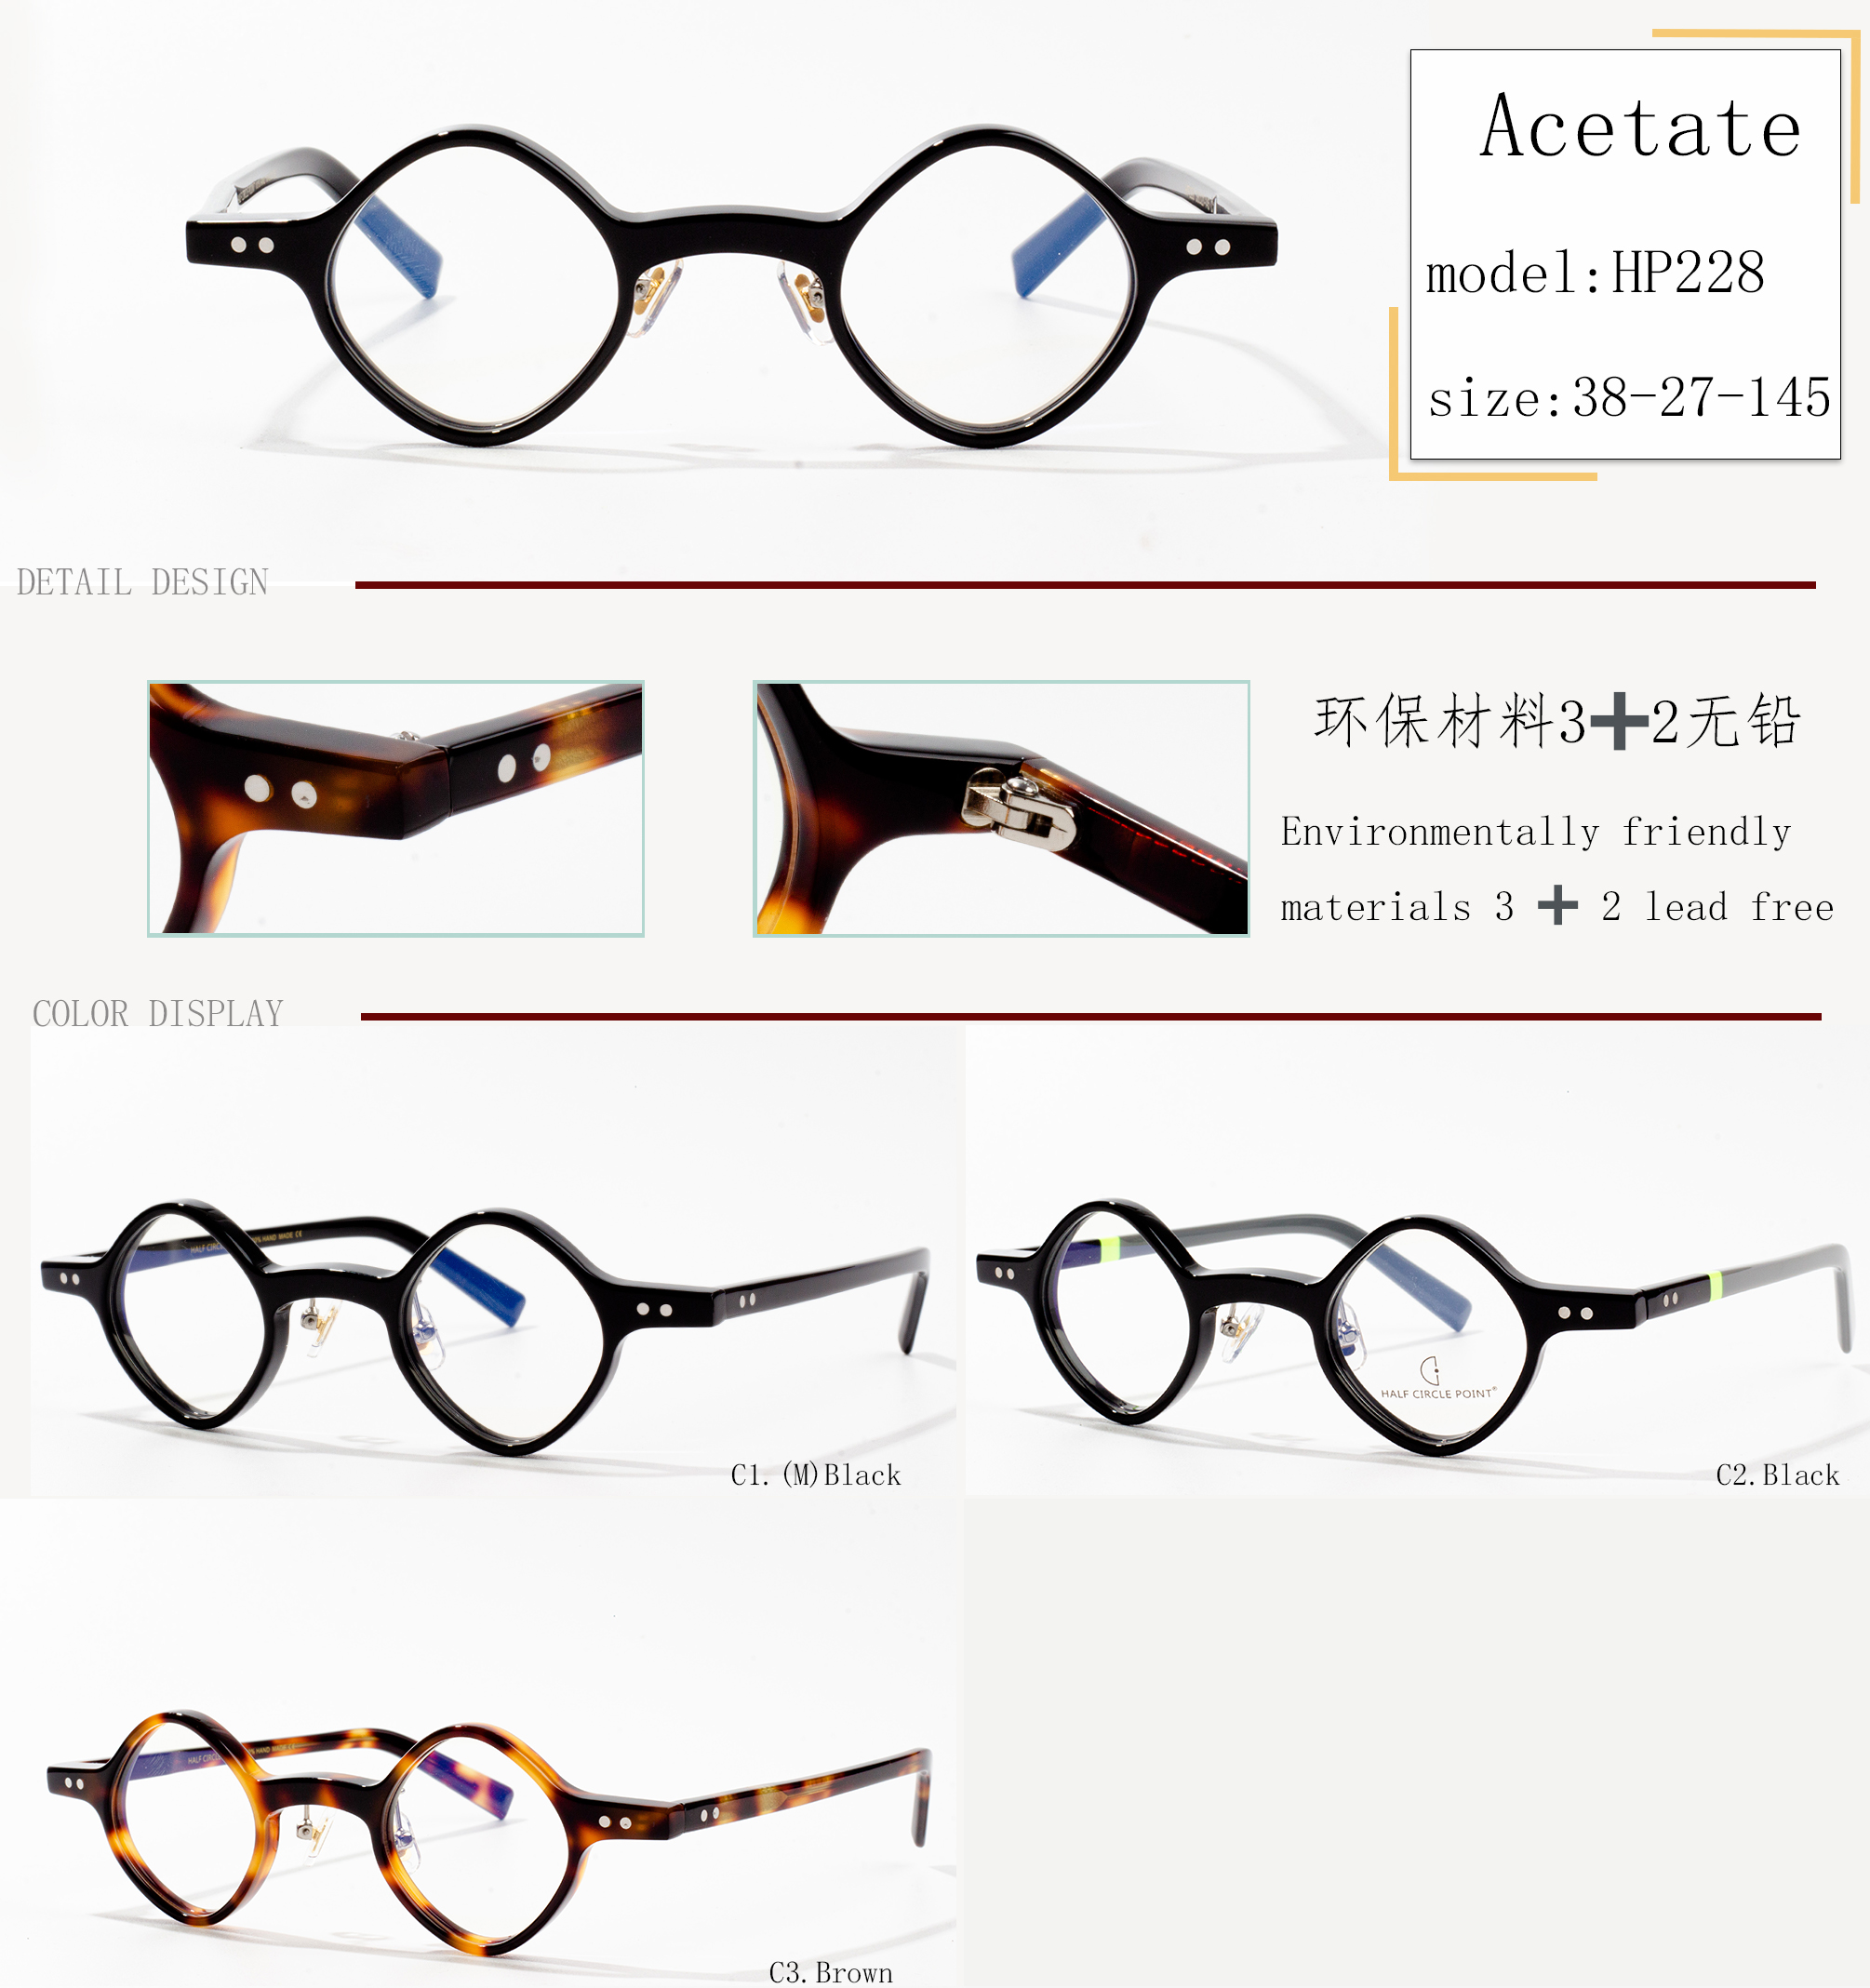 montura d'ulleres d'acetat